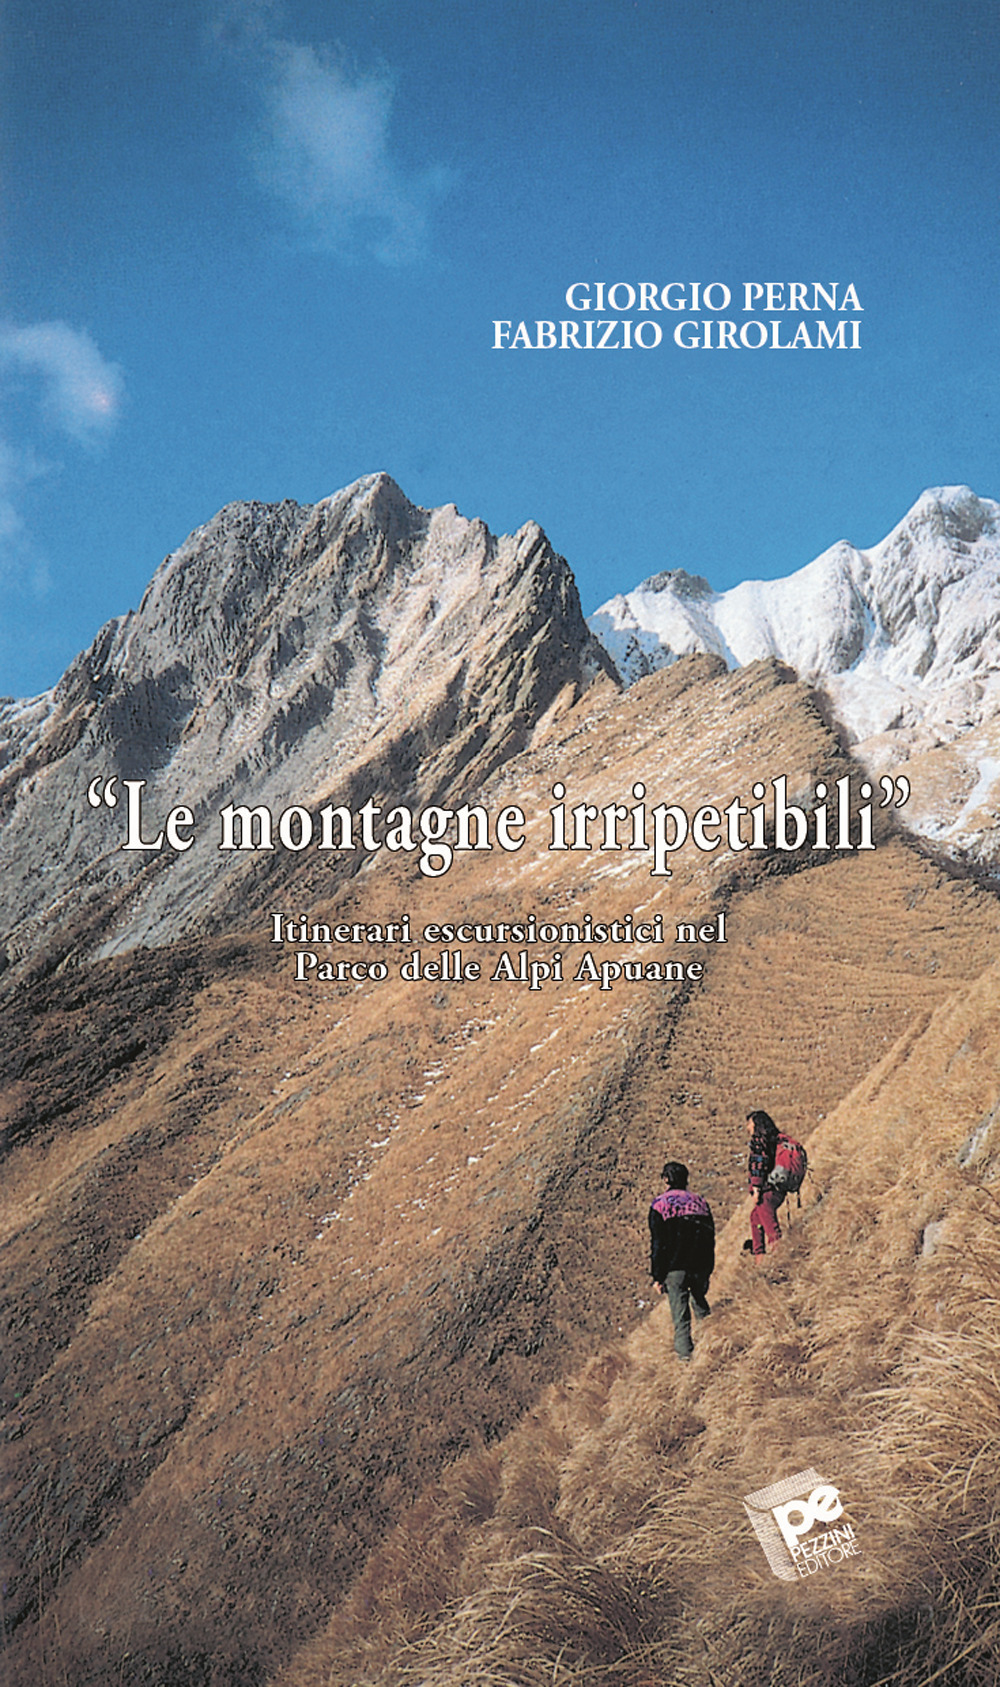 Le montagne irripetibili. Itinerari erscursionistici nel parco delle Alpi Apuane